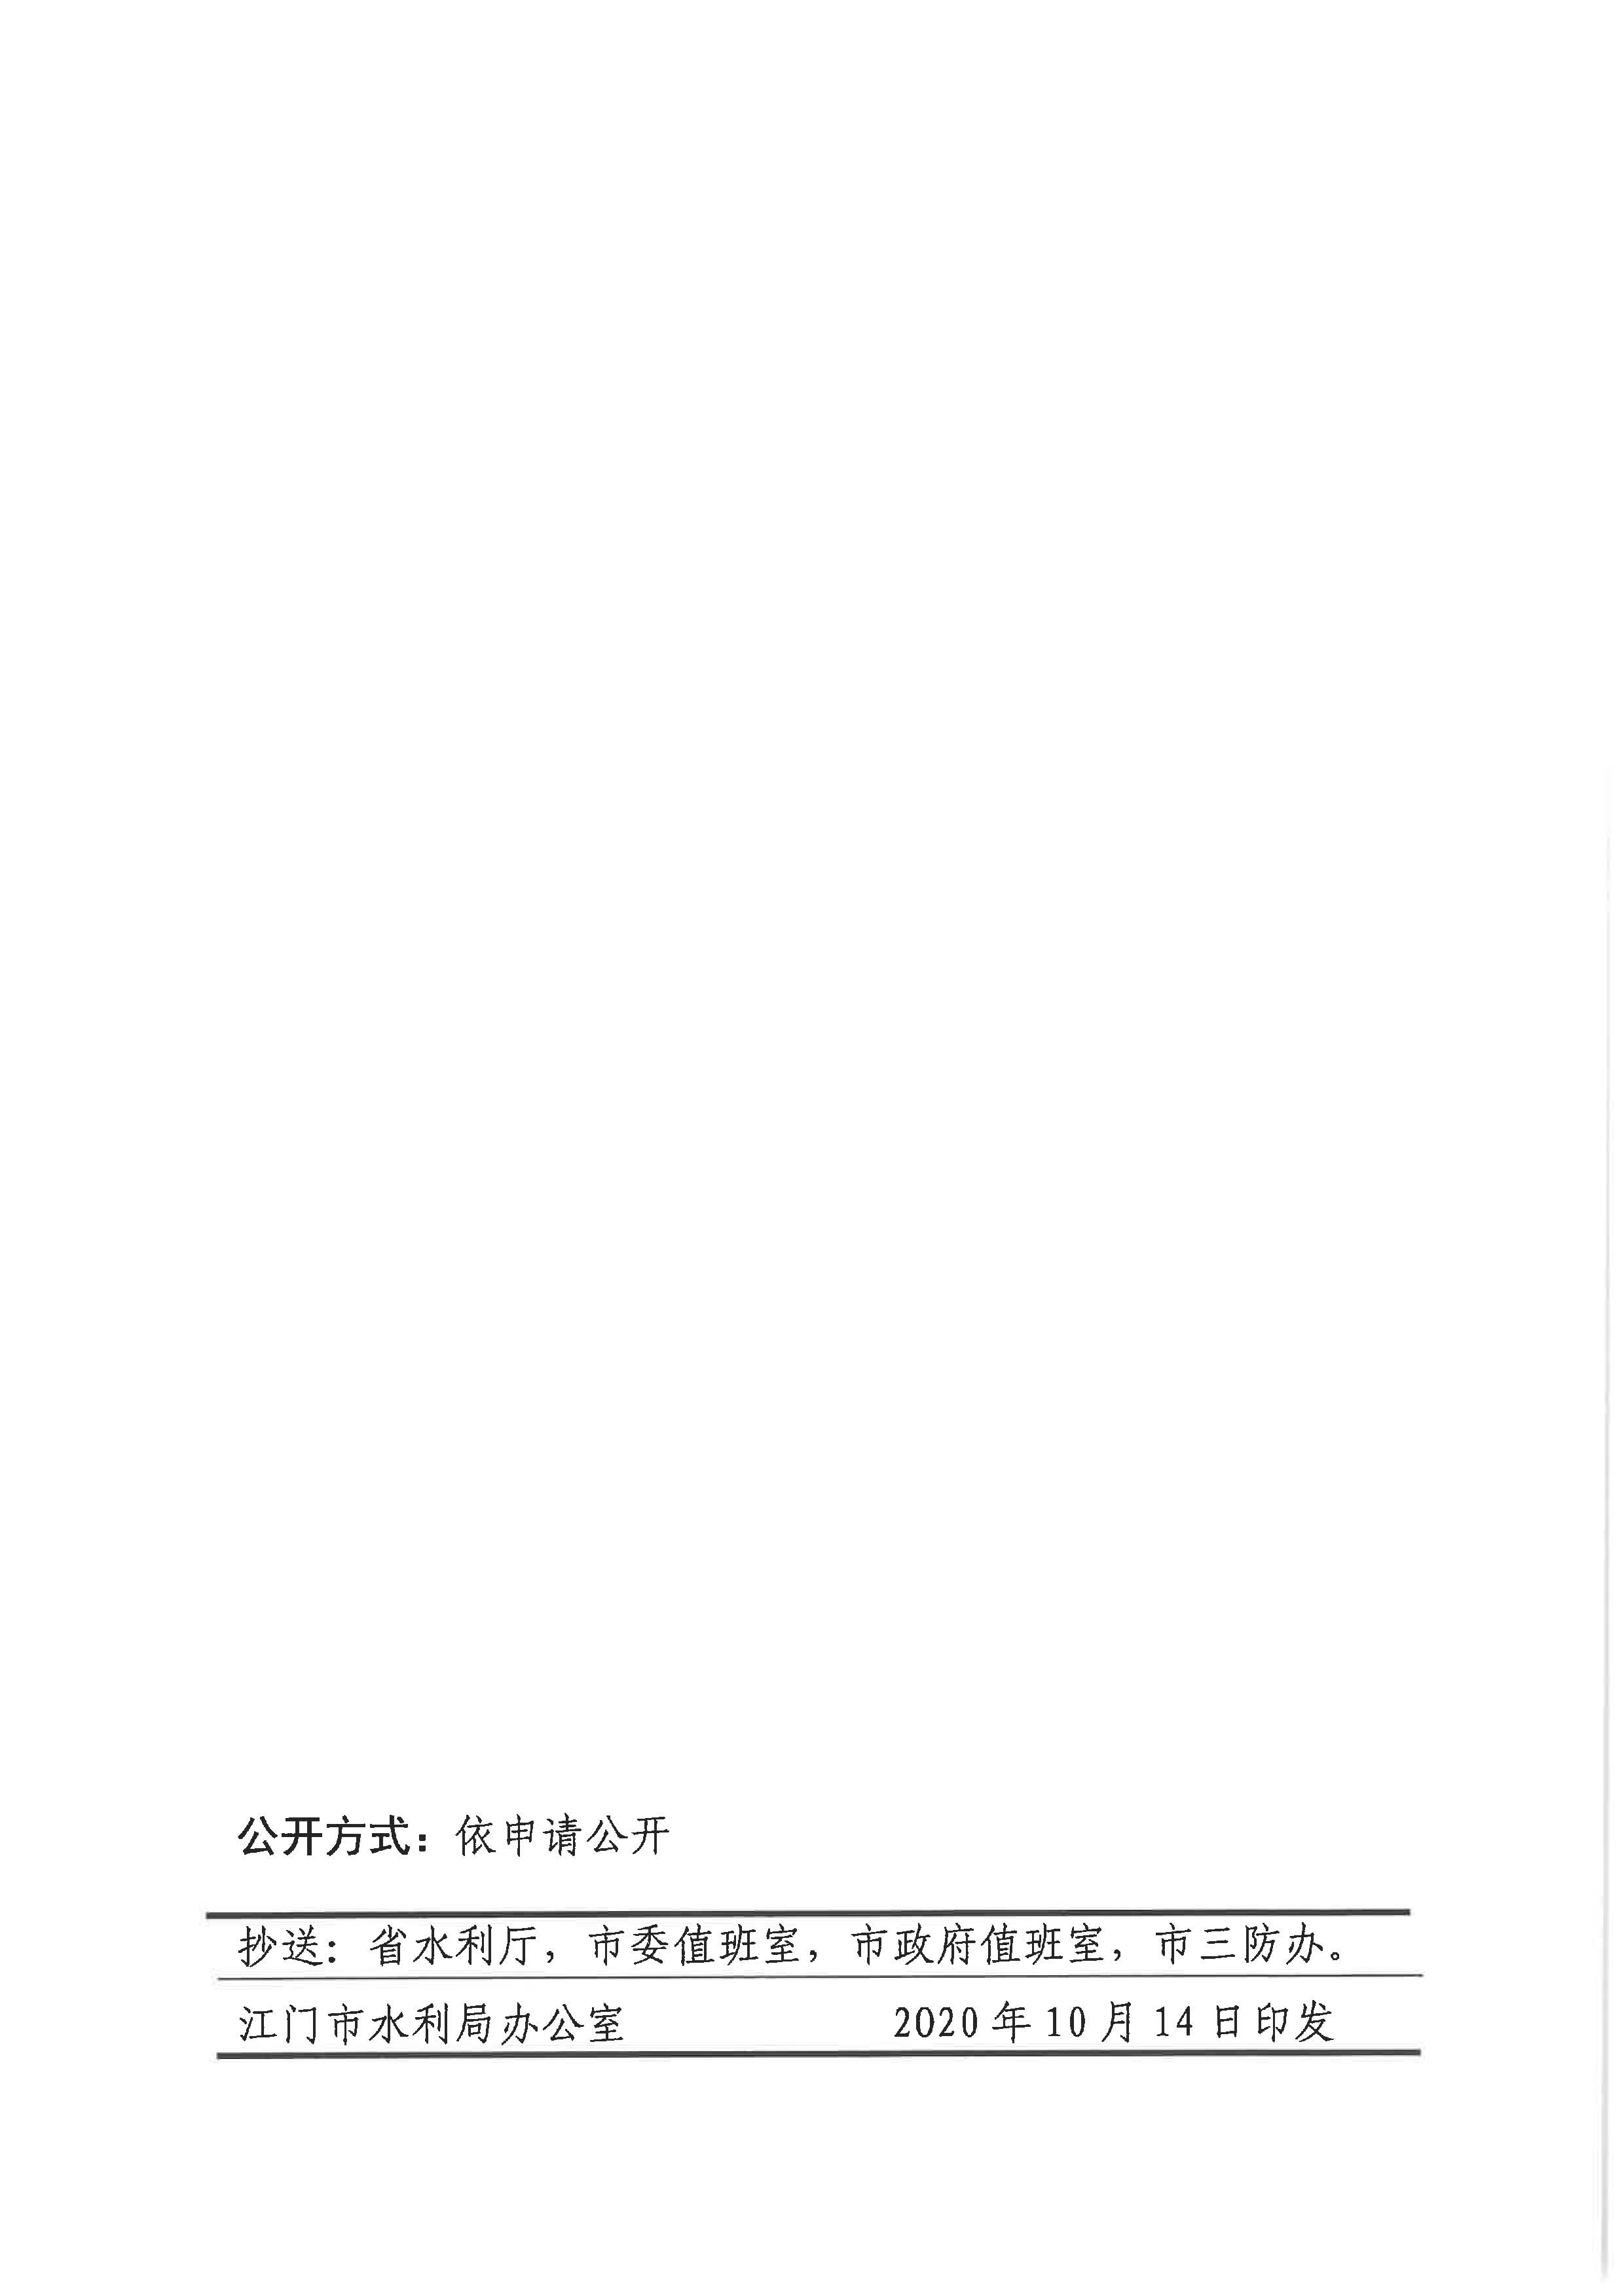 江门市水利局关于结束水利防汛Ⅳ级应急响应的通知_页面_2.jpg